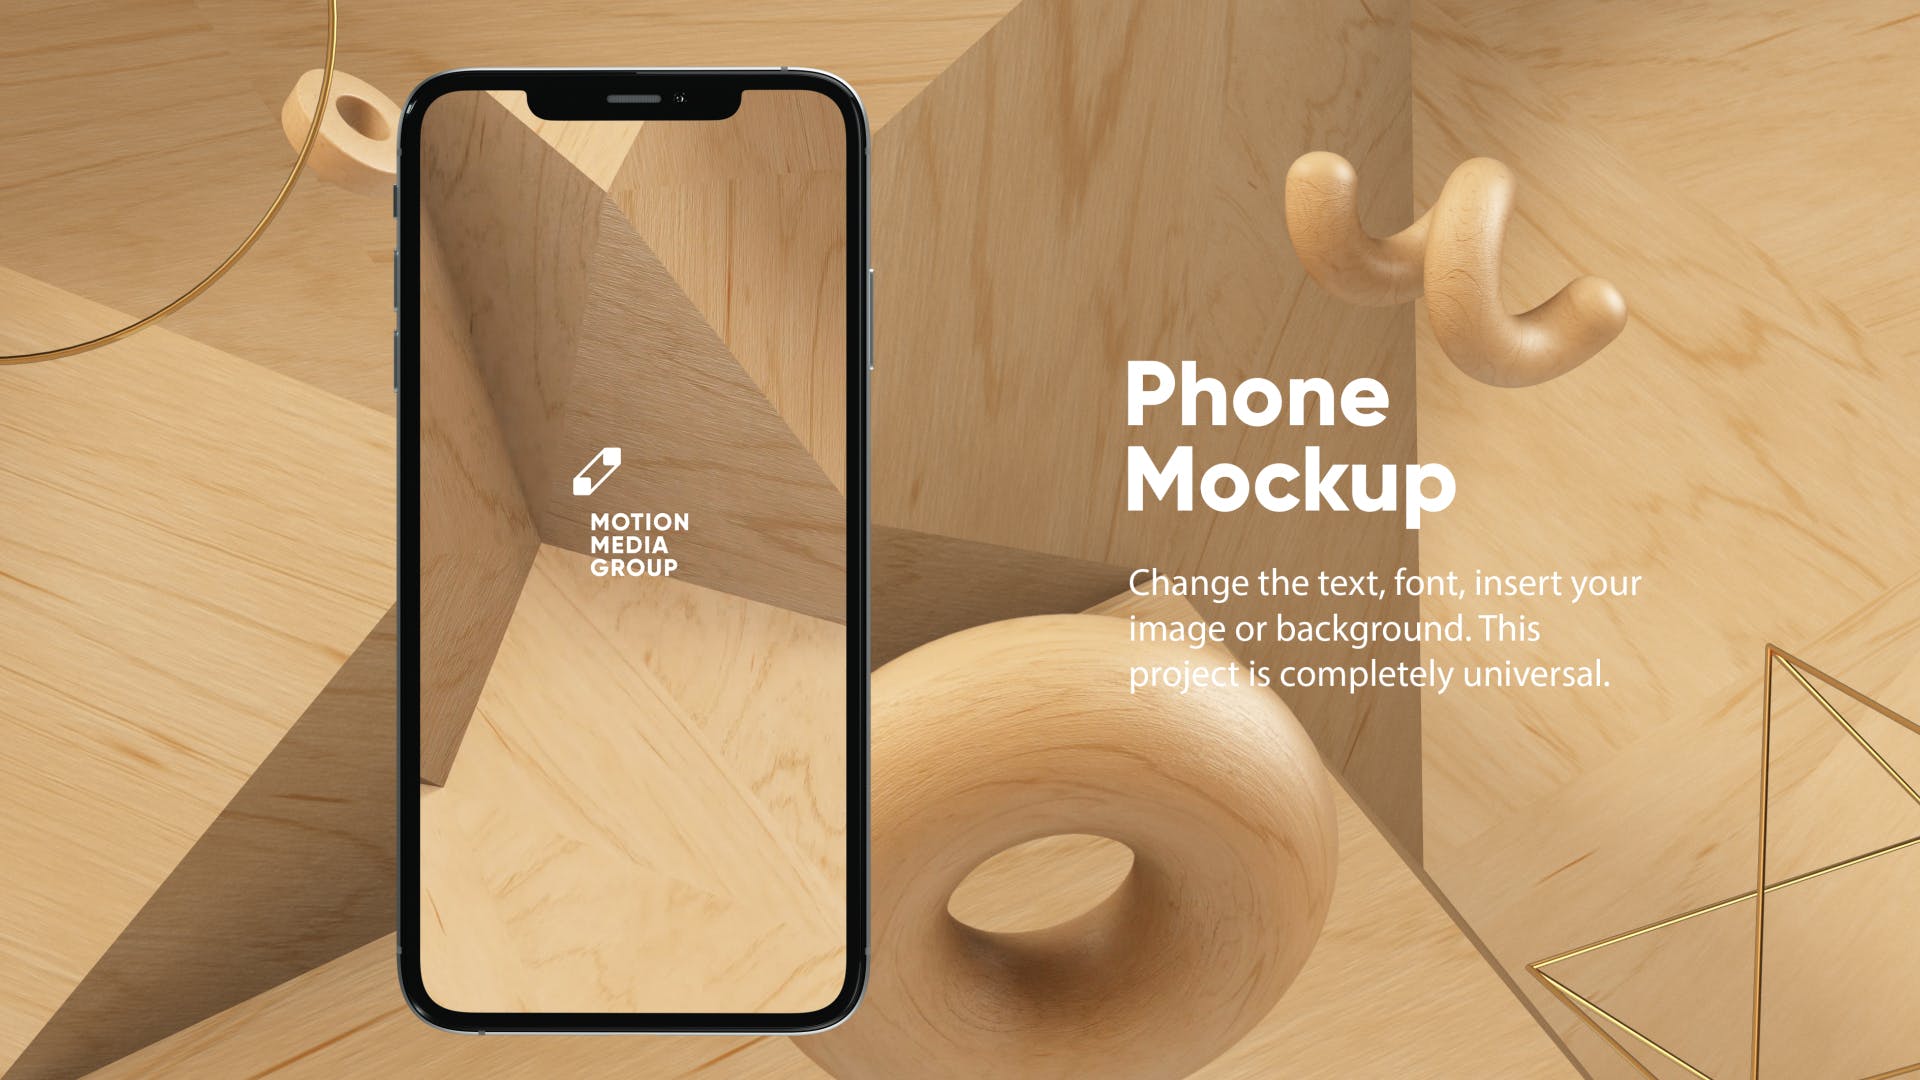 优雅时尚风格3D立体风格iPhone手机屏幕预览素材库精选样机 10 Light Phone Mockups插图(3)